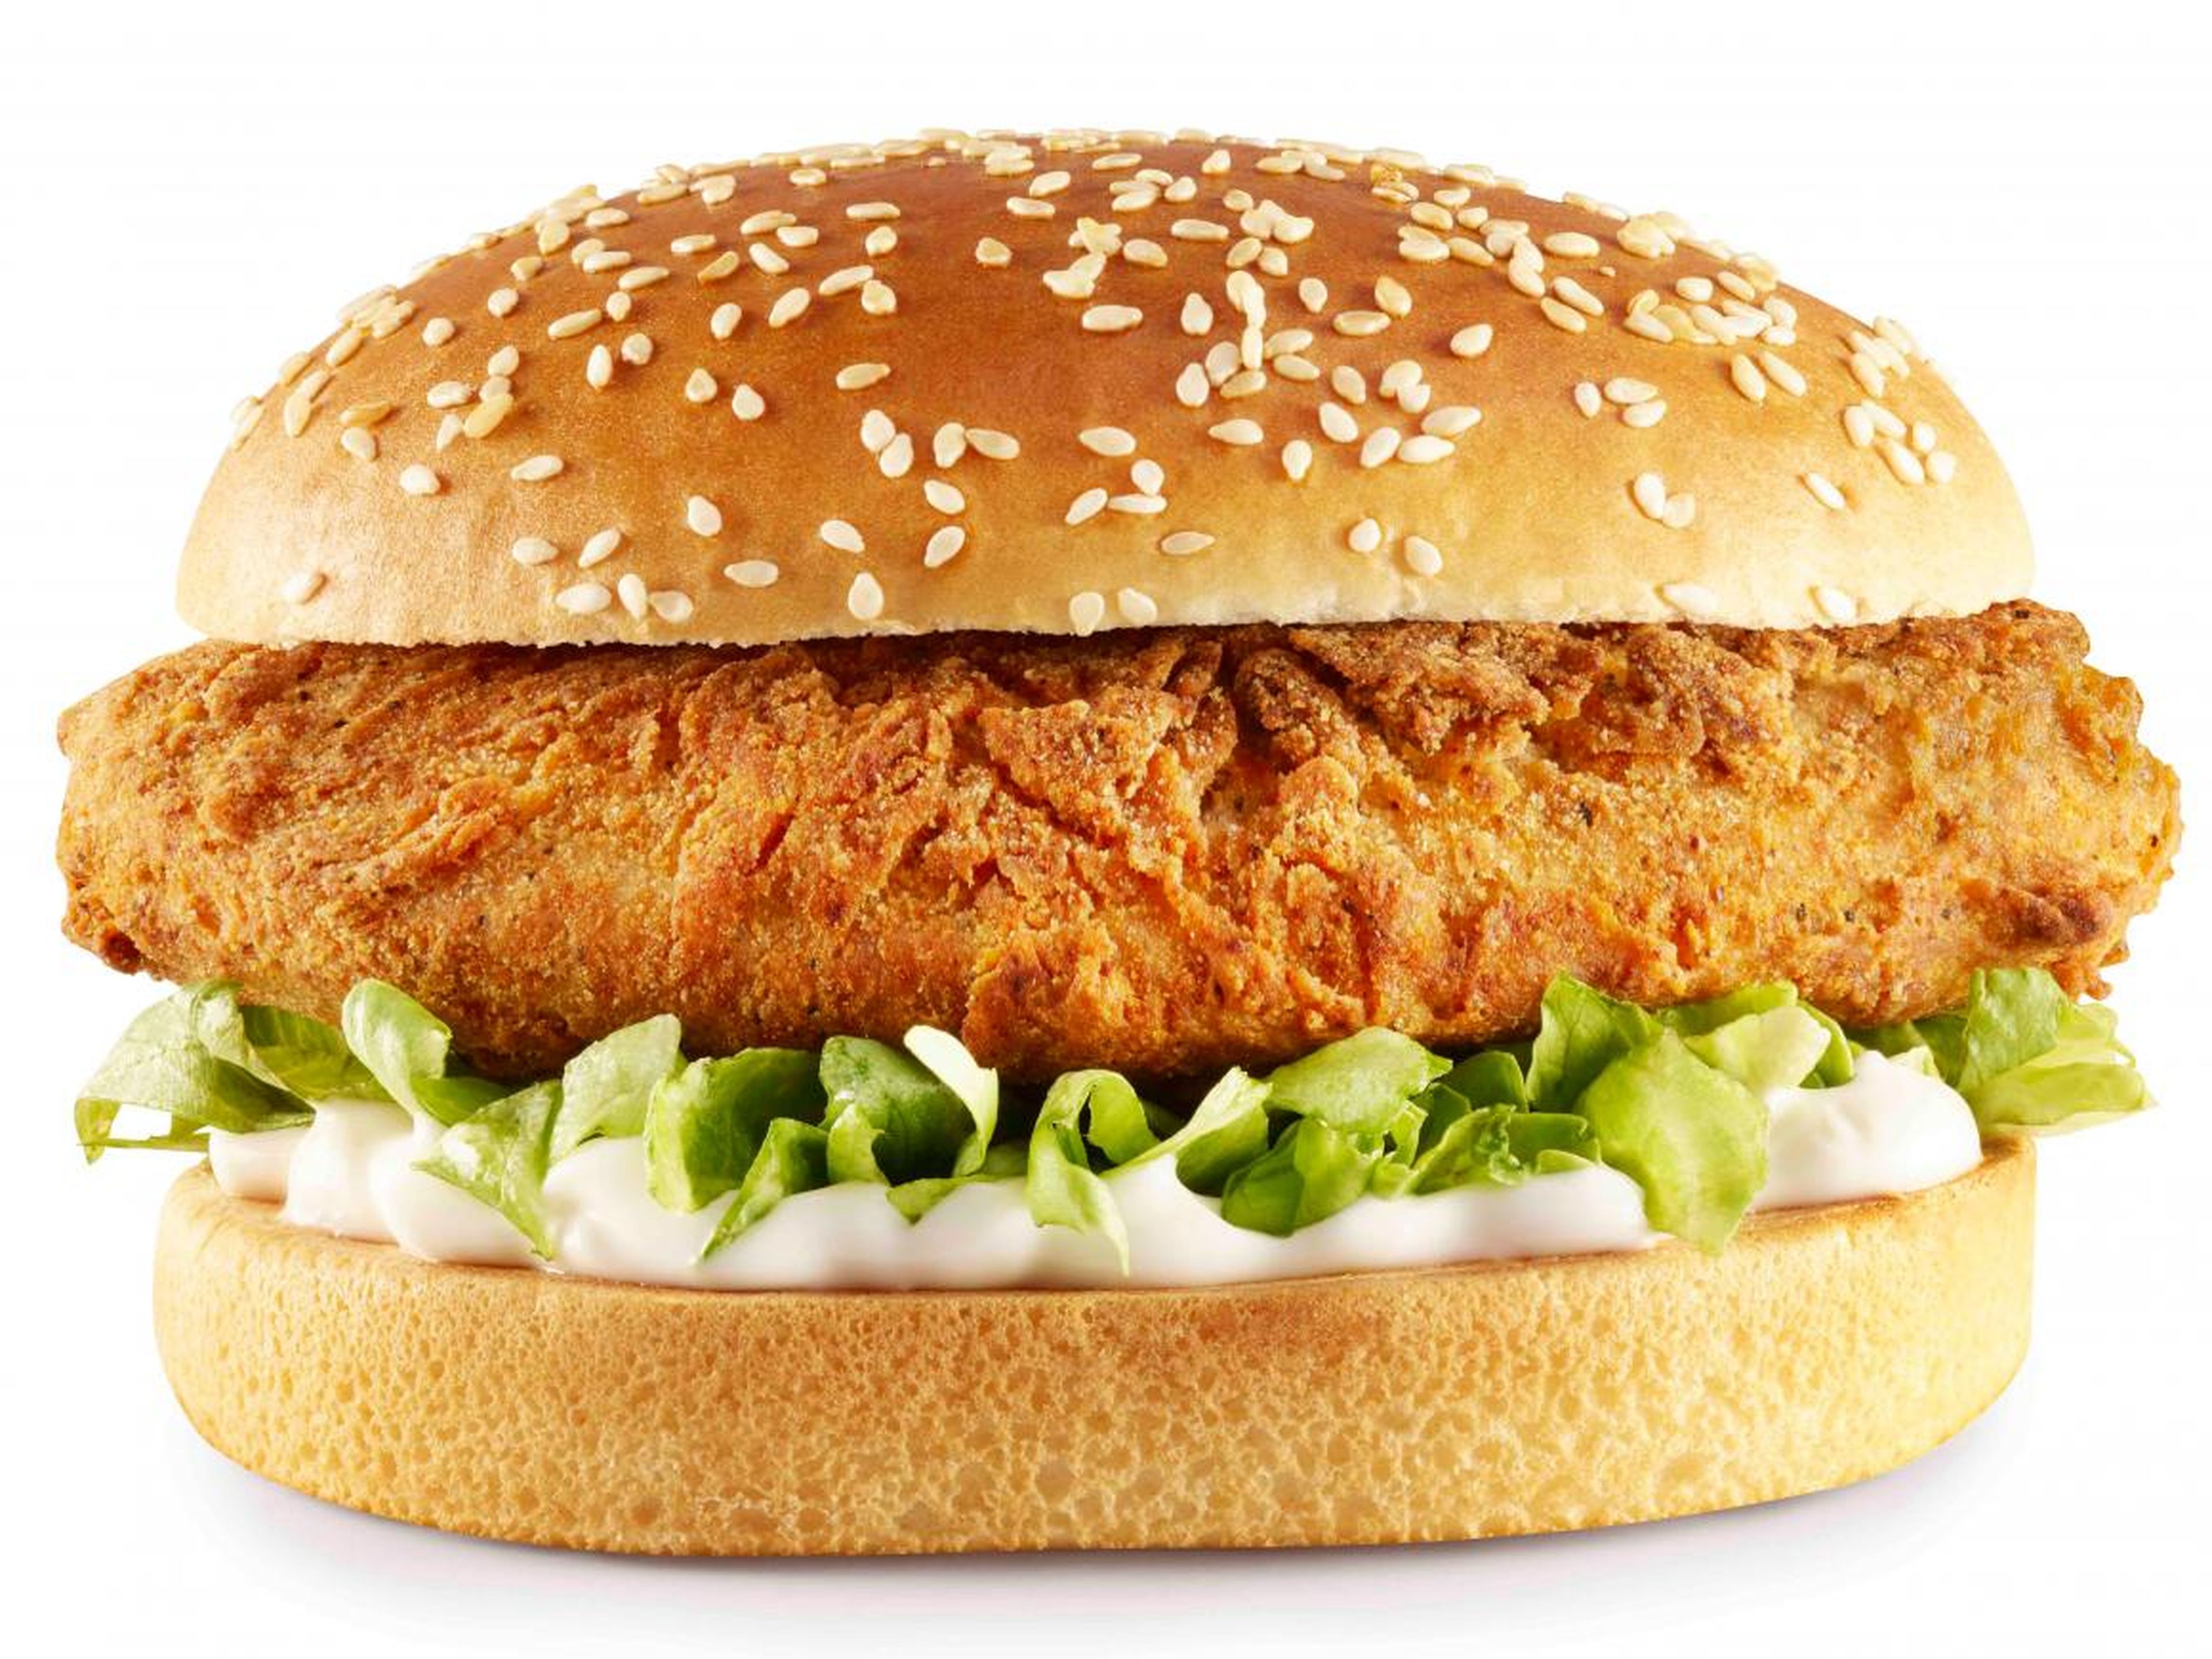 La hamburguesa vegana llevará las mismas especias que su equivalente de carne.